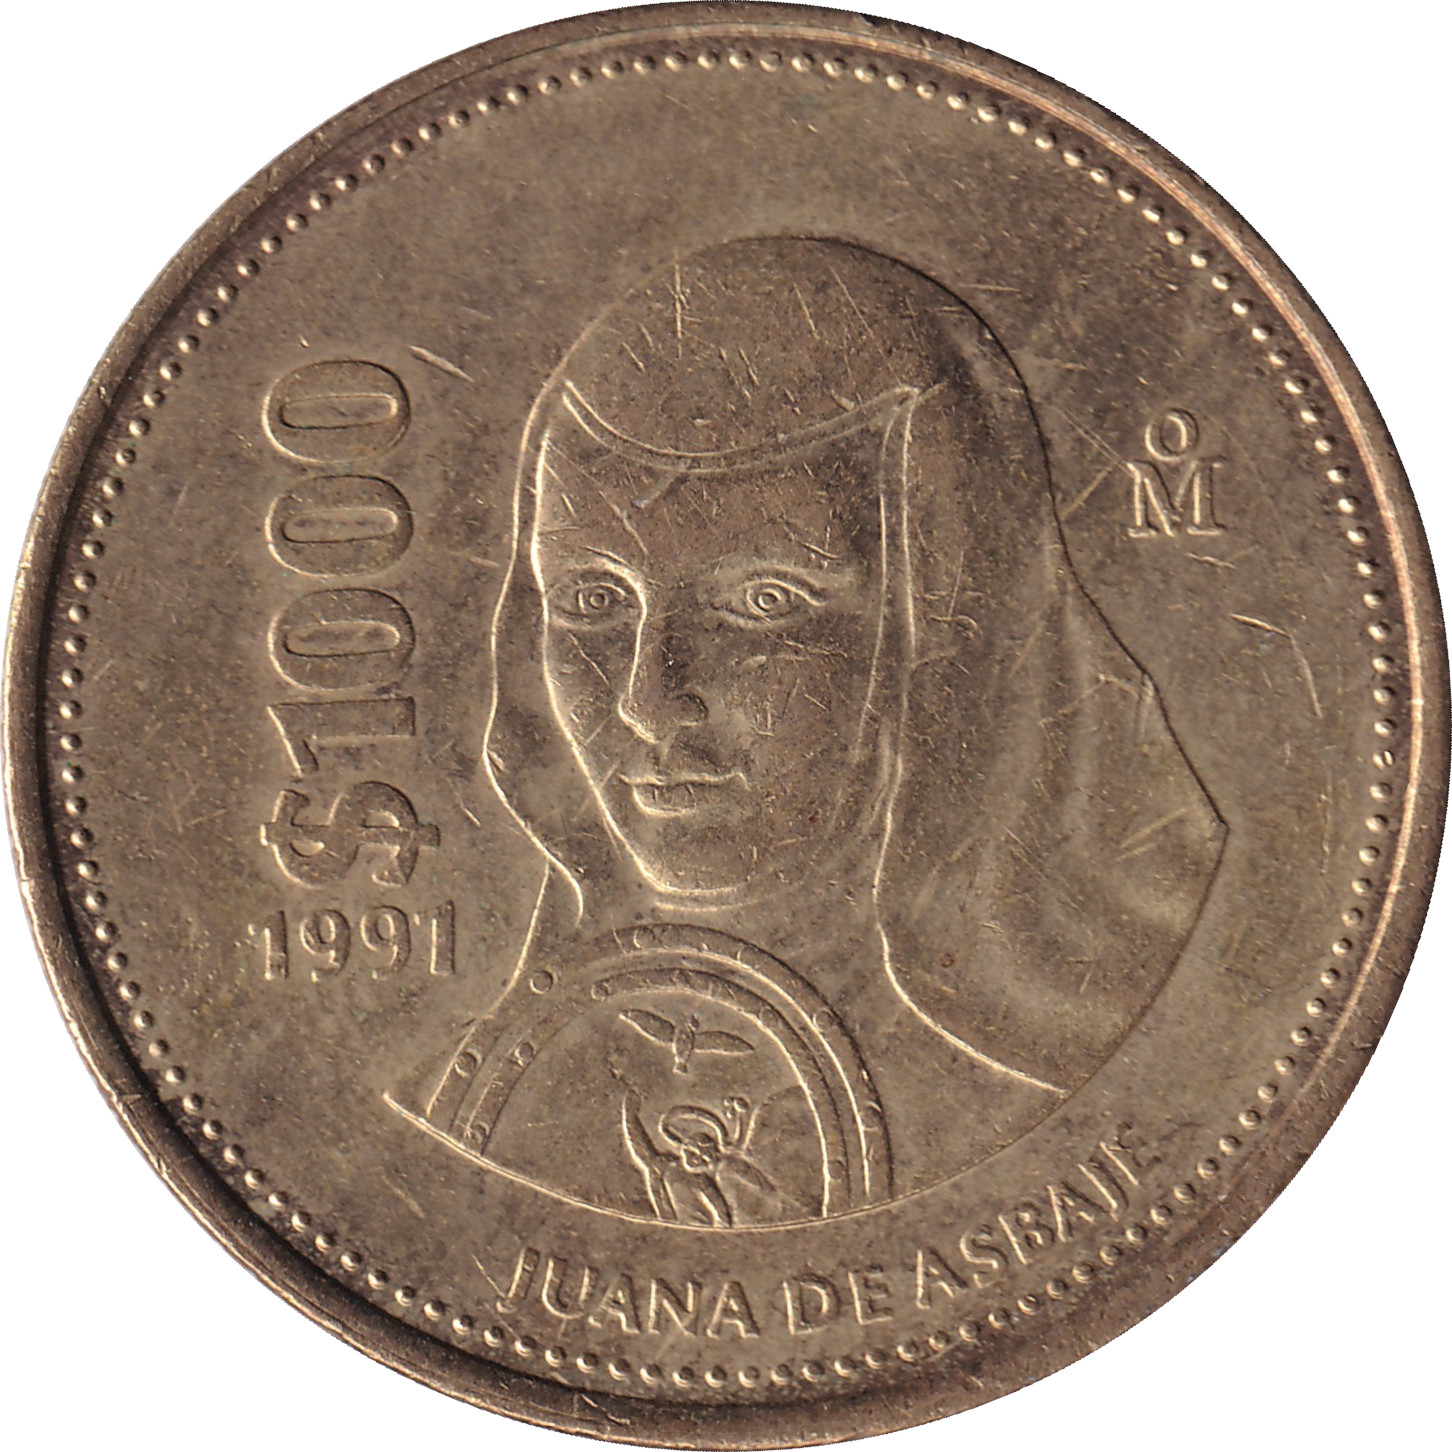 1000 pesos - Juana Ines de la Cruz